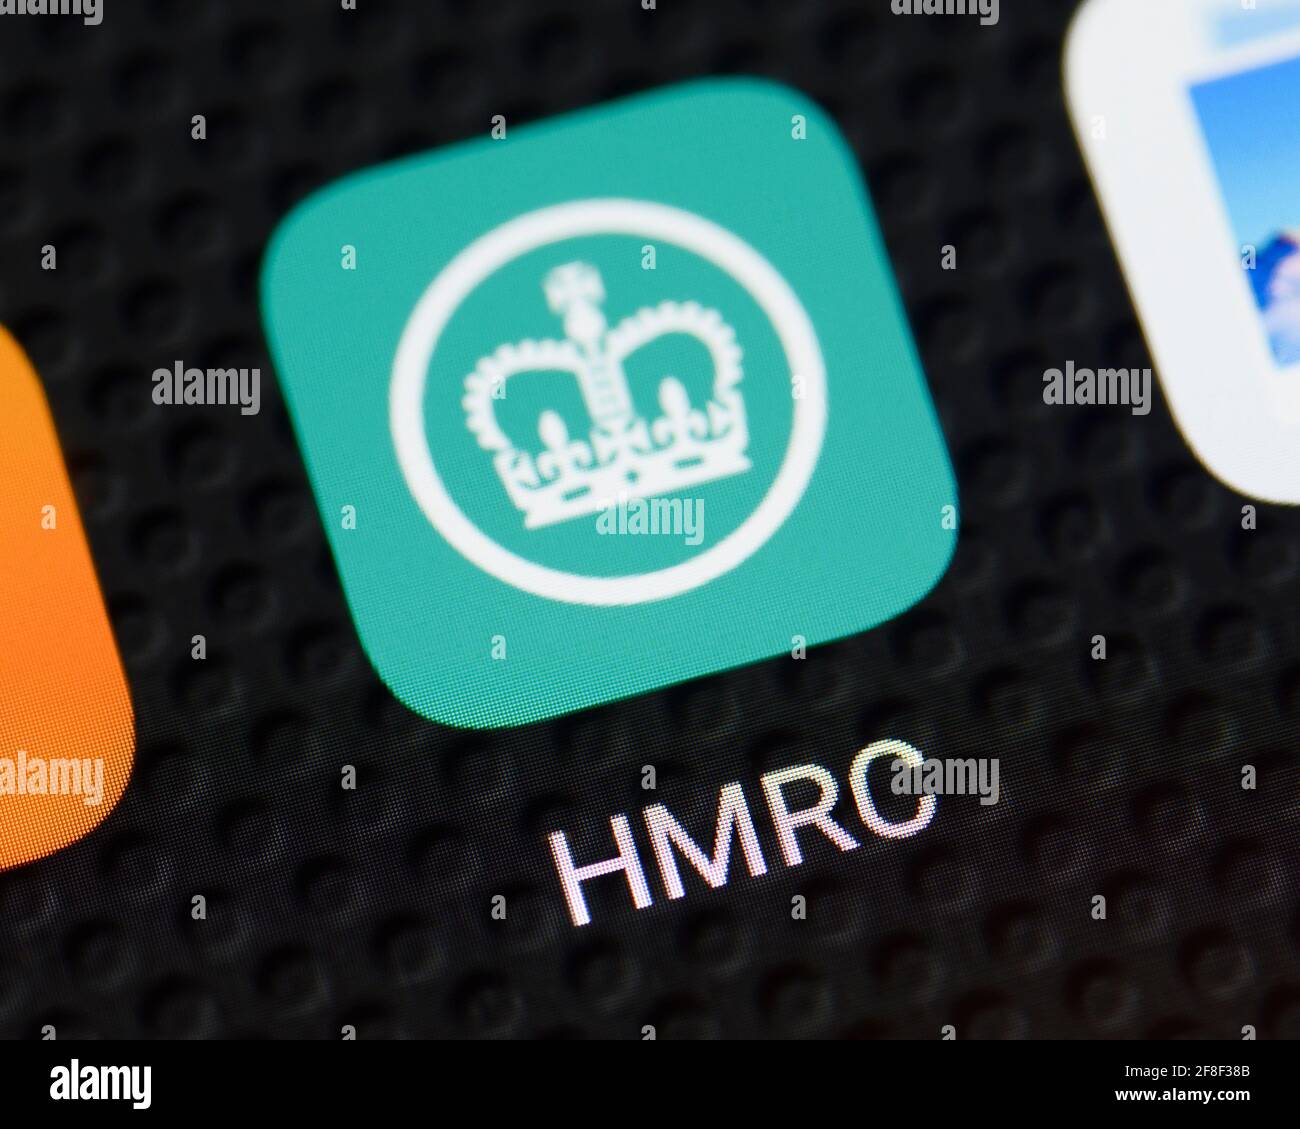 Icône de l'application HMRC sur un smartphone, Royaume-Uni Banque D'Images